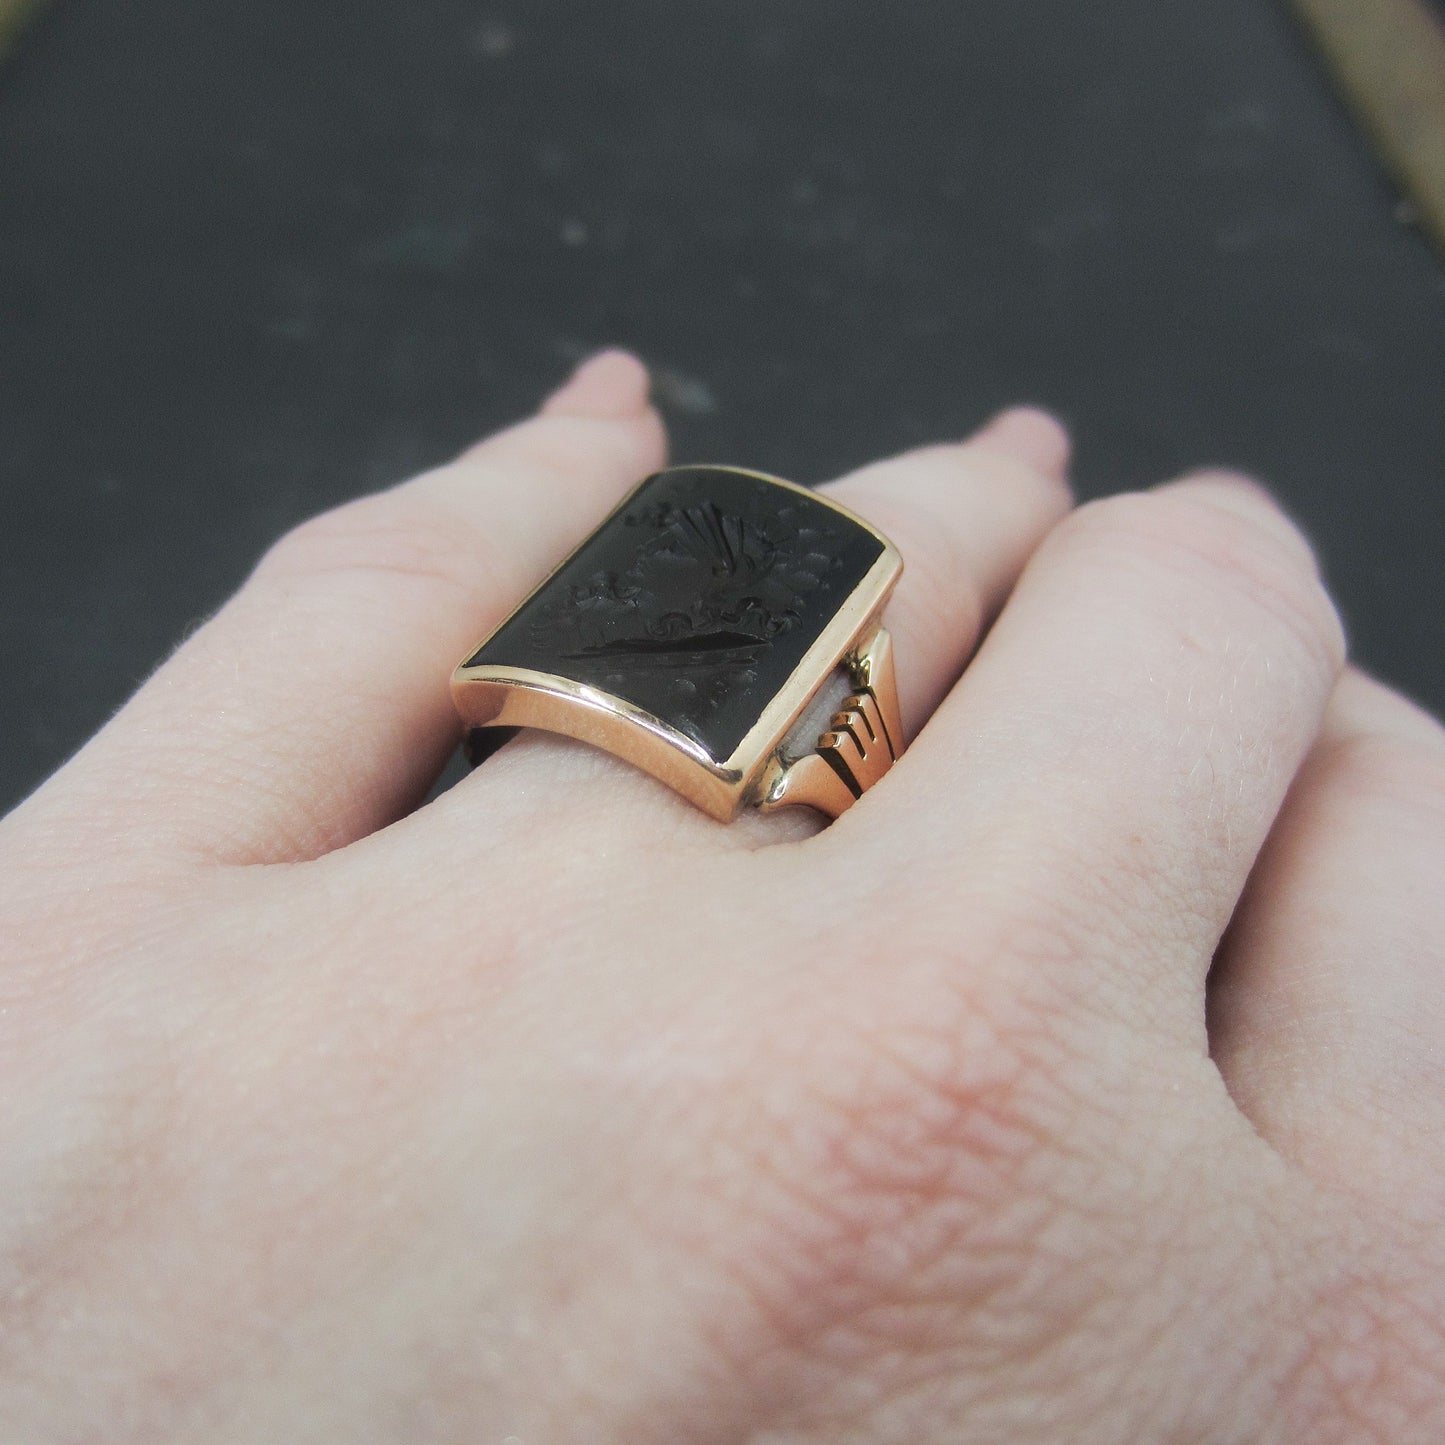 SOLD--Victorian Onyx Warrior Intaglio Ring 14k c. 1890